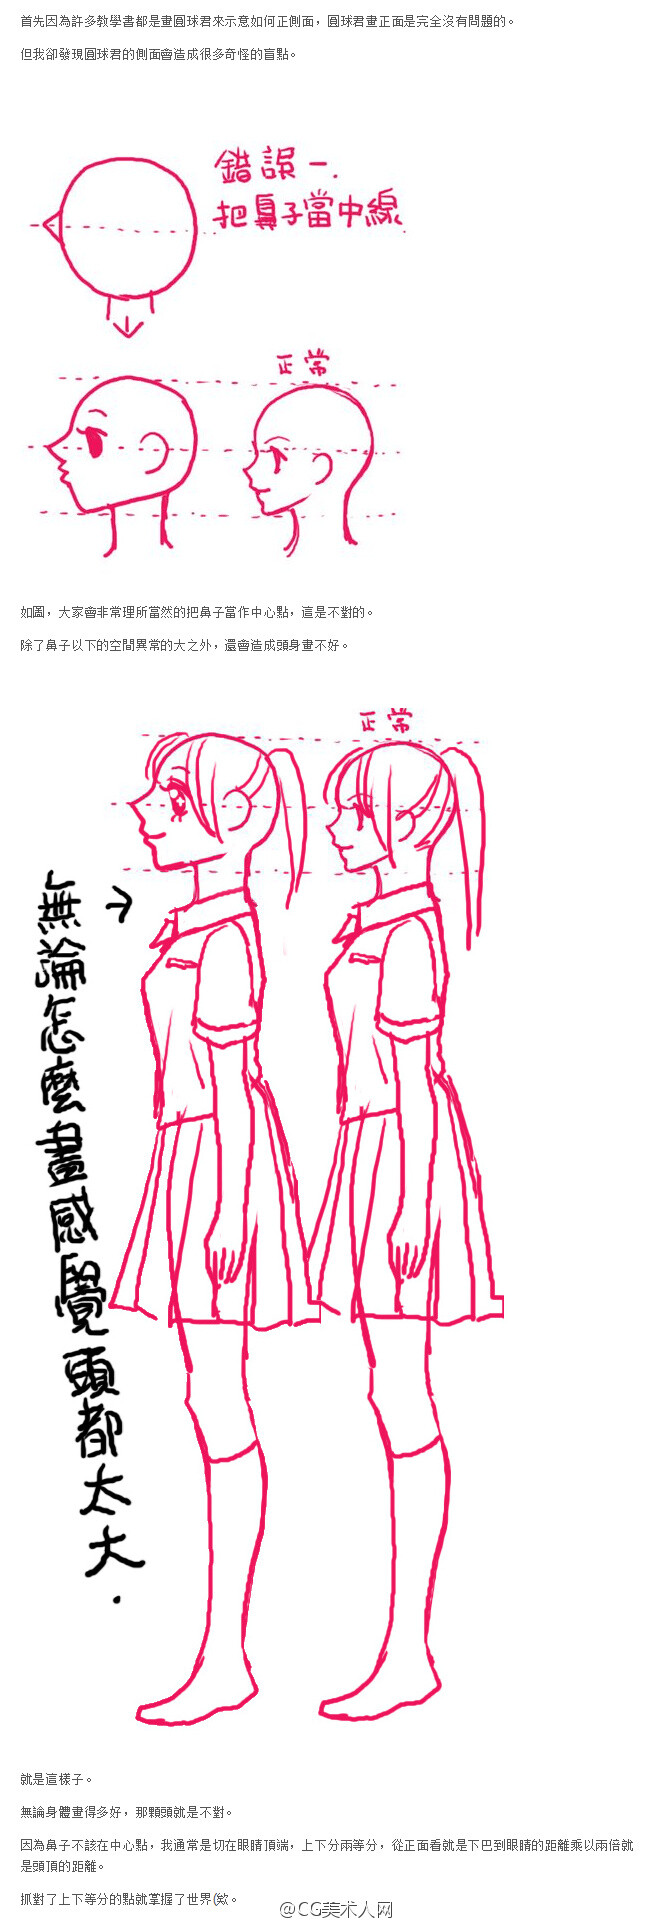 绘画教程#台湾漫画家陈汉玲关于漫画人物侧面绘制的方法